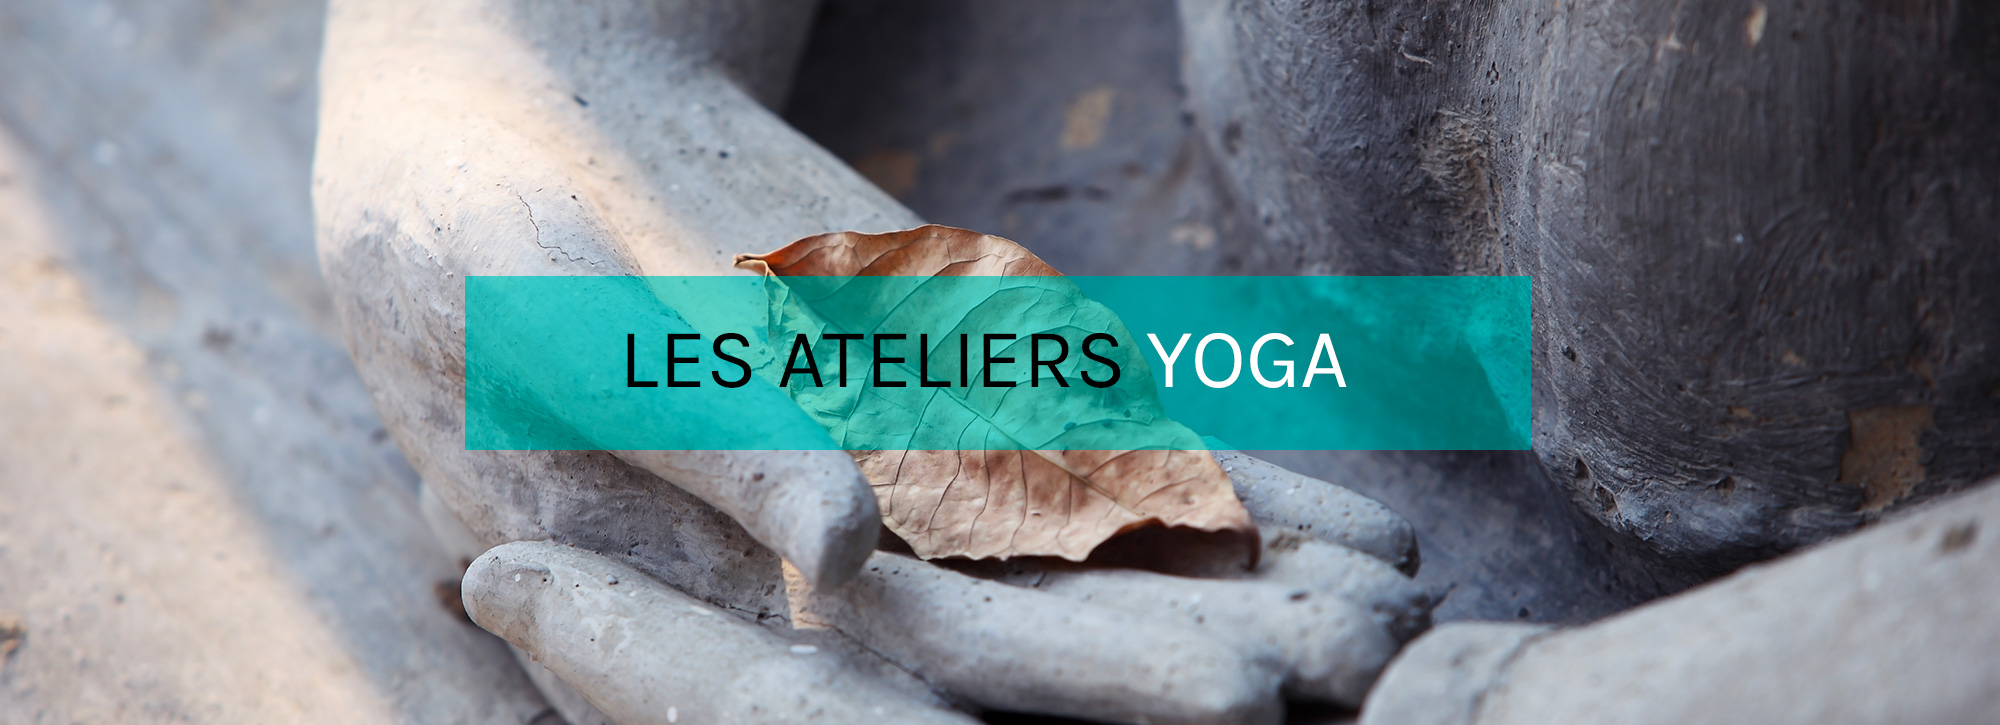 Ateliers Yoga à Paris aux studios CasaYoga